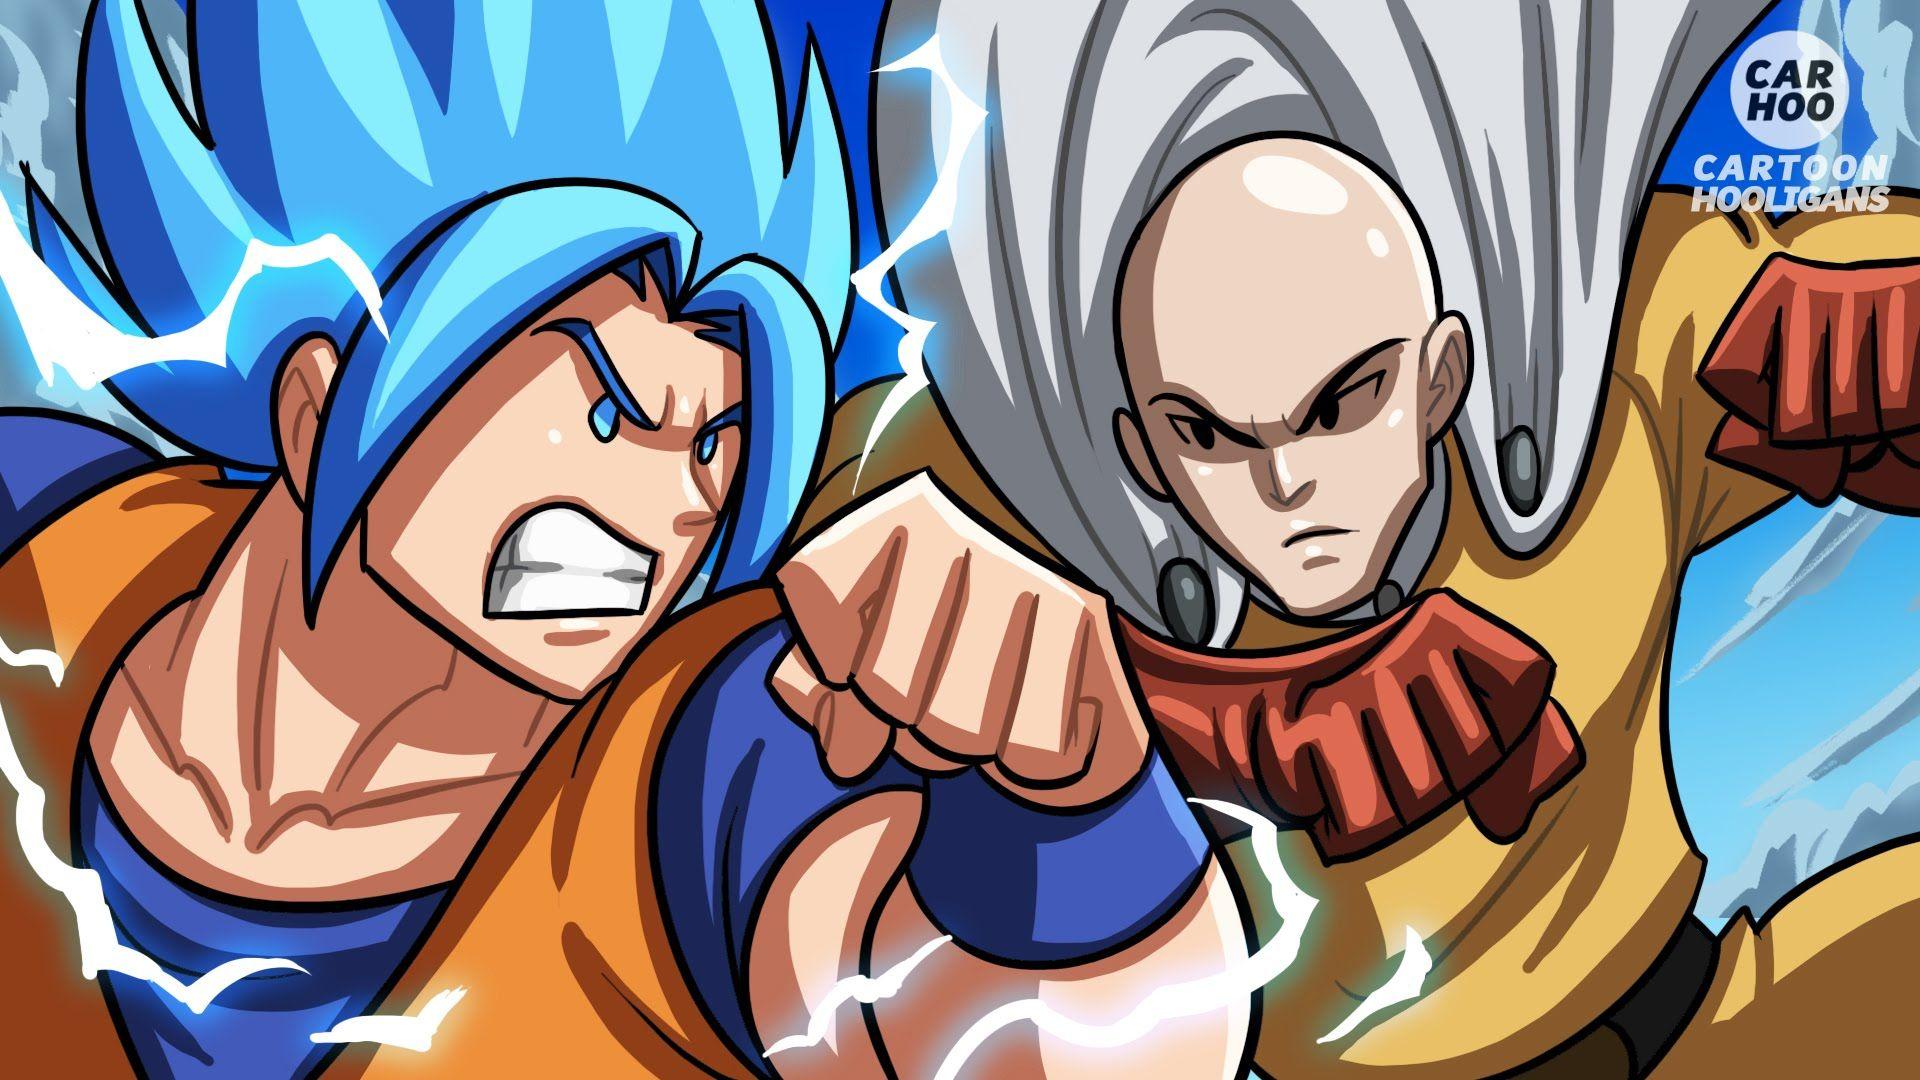 Goku Vs Saitama If Battle [ OPM/ DBZ / DBS Parody ]